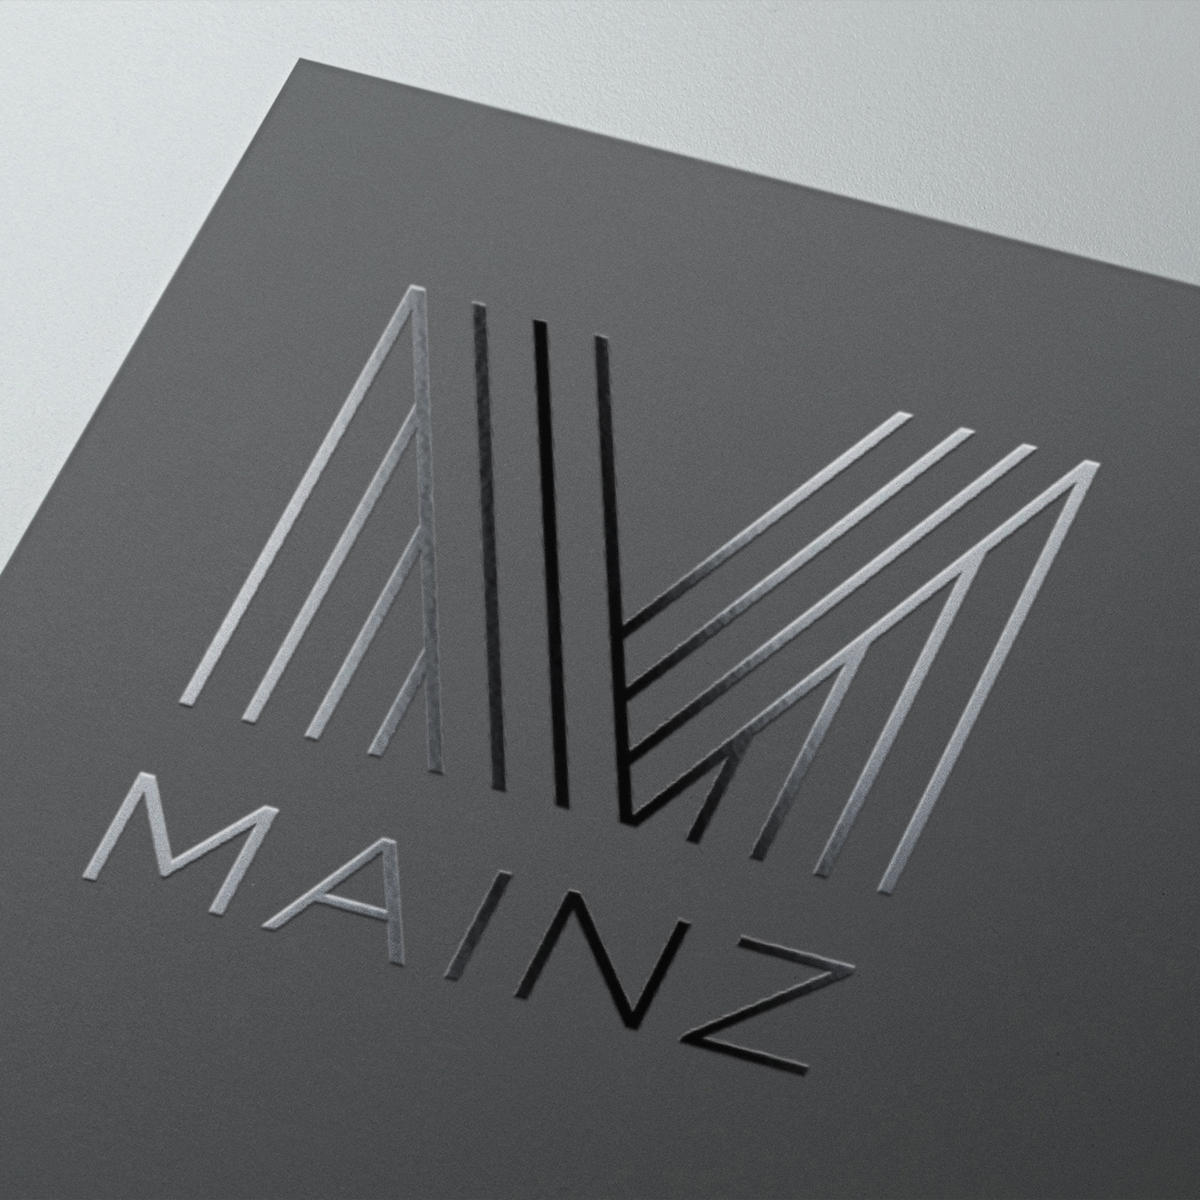 Mainz Logo